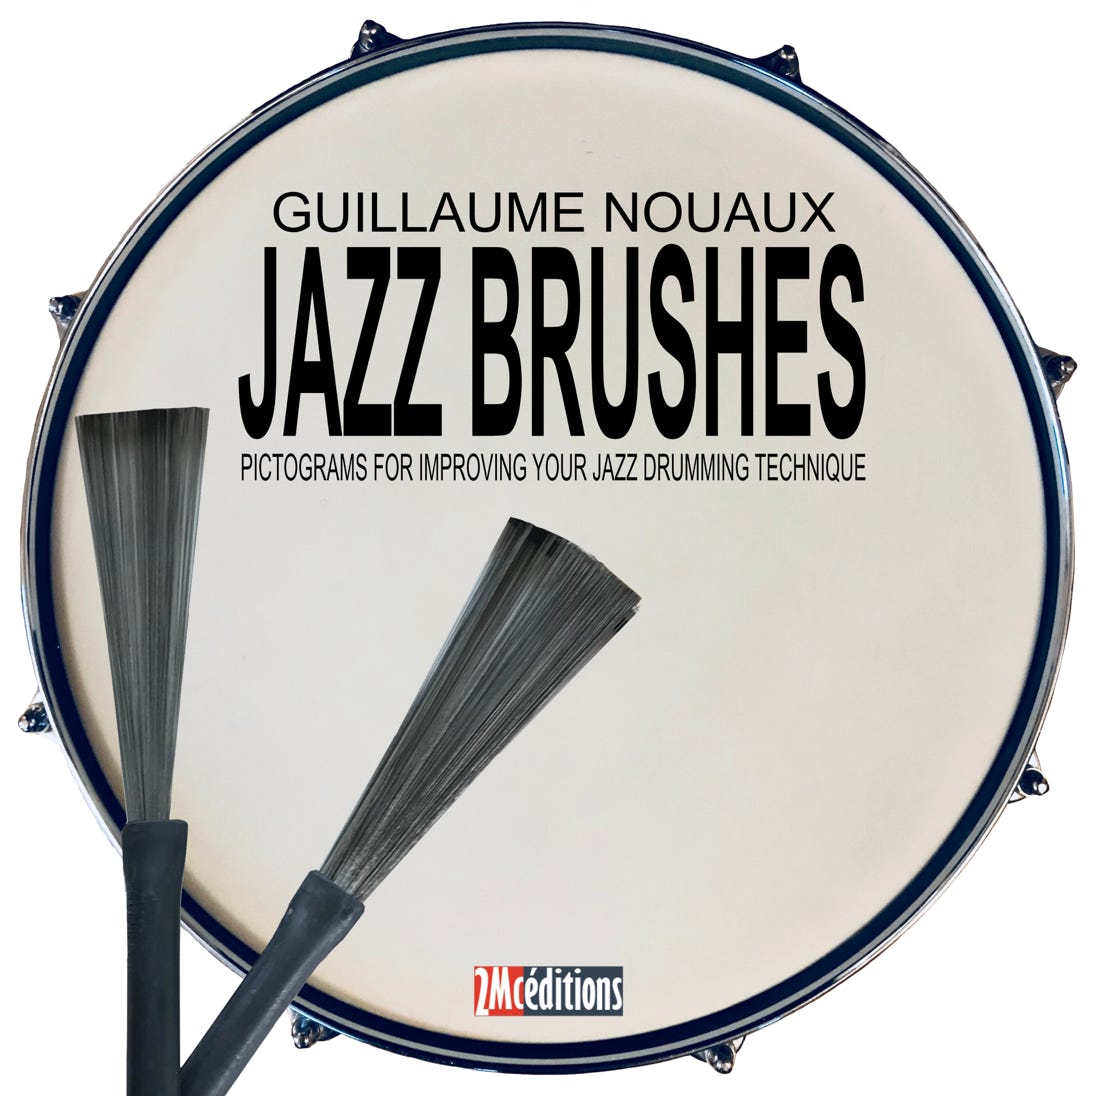 GUILLAUME NOUAUX | Jazz Brushes (2Mc éditions)